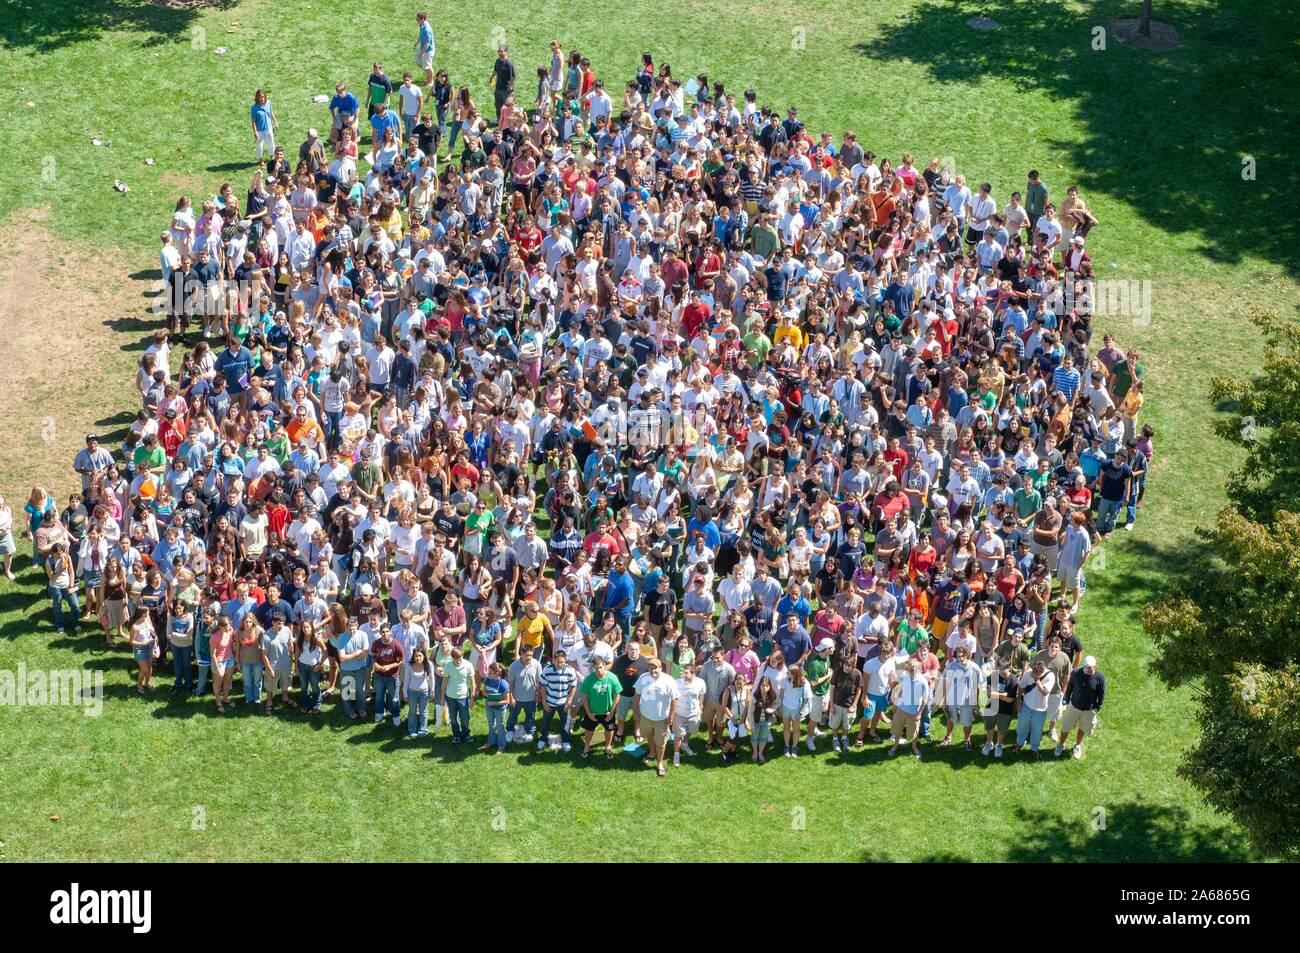 Vue d'ensemble, d'une foule d'étudiants de première année au cours d'une semaine de l'orientation, l'événement se tient à proximité ensemble dans l'herbe sur une journée ensoleillée, à l'Université Johns Hopkins University, Baltimore, Maryland, le 4 septembre 2006. À partir de la collection photographique de Homewood. () Banque D'Images